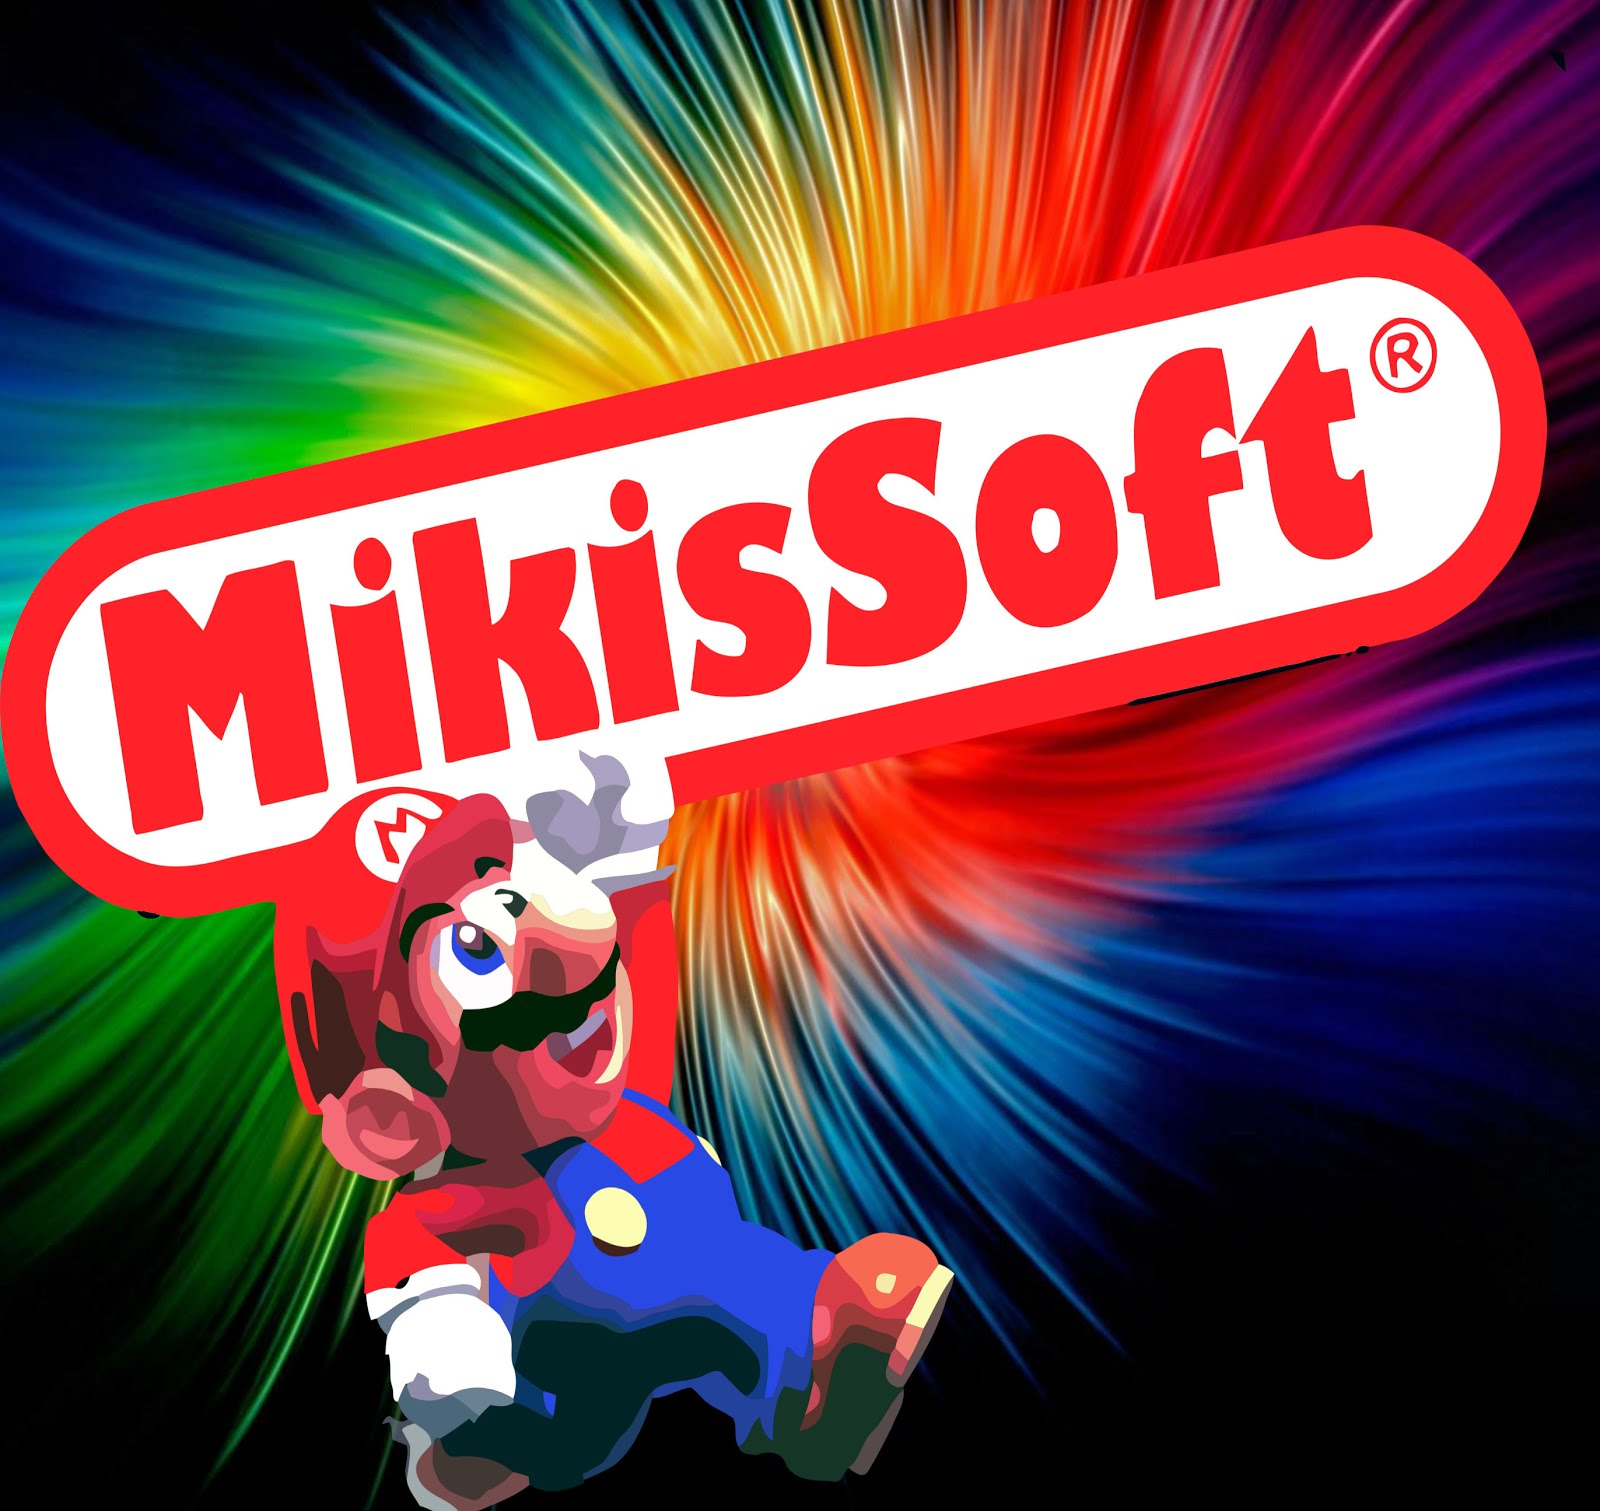 Mikissoft - juegos y programas